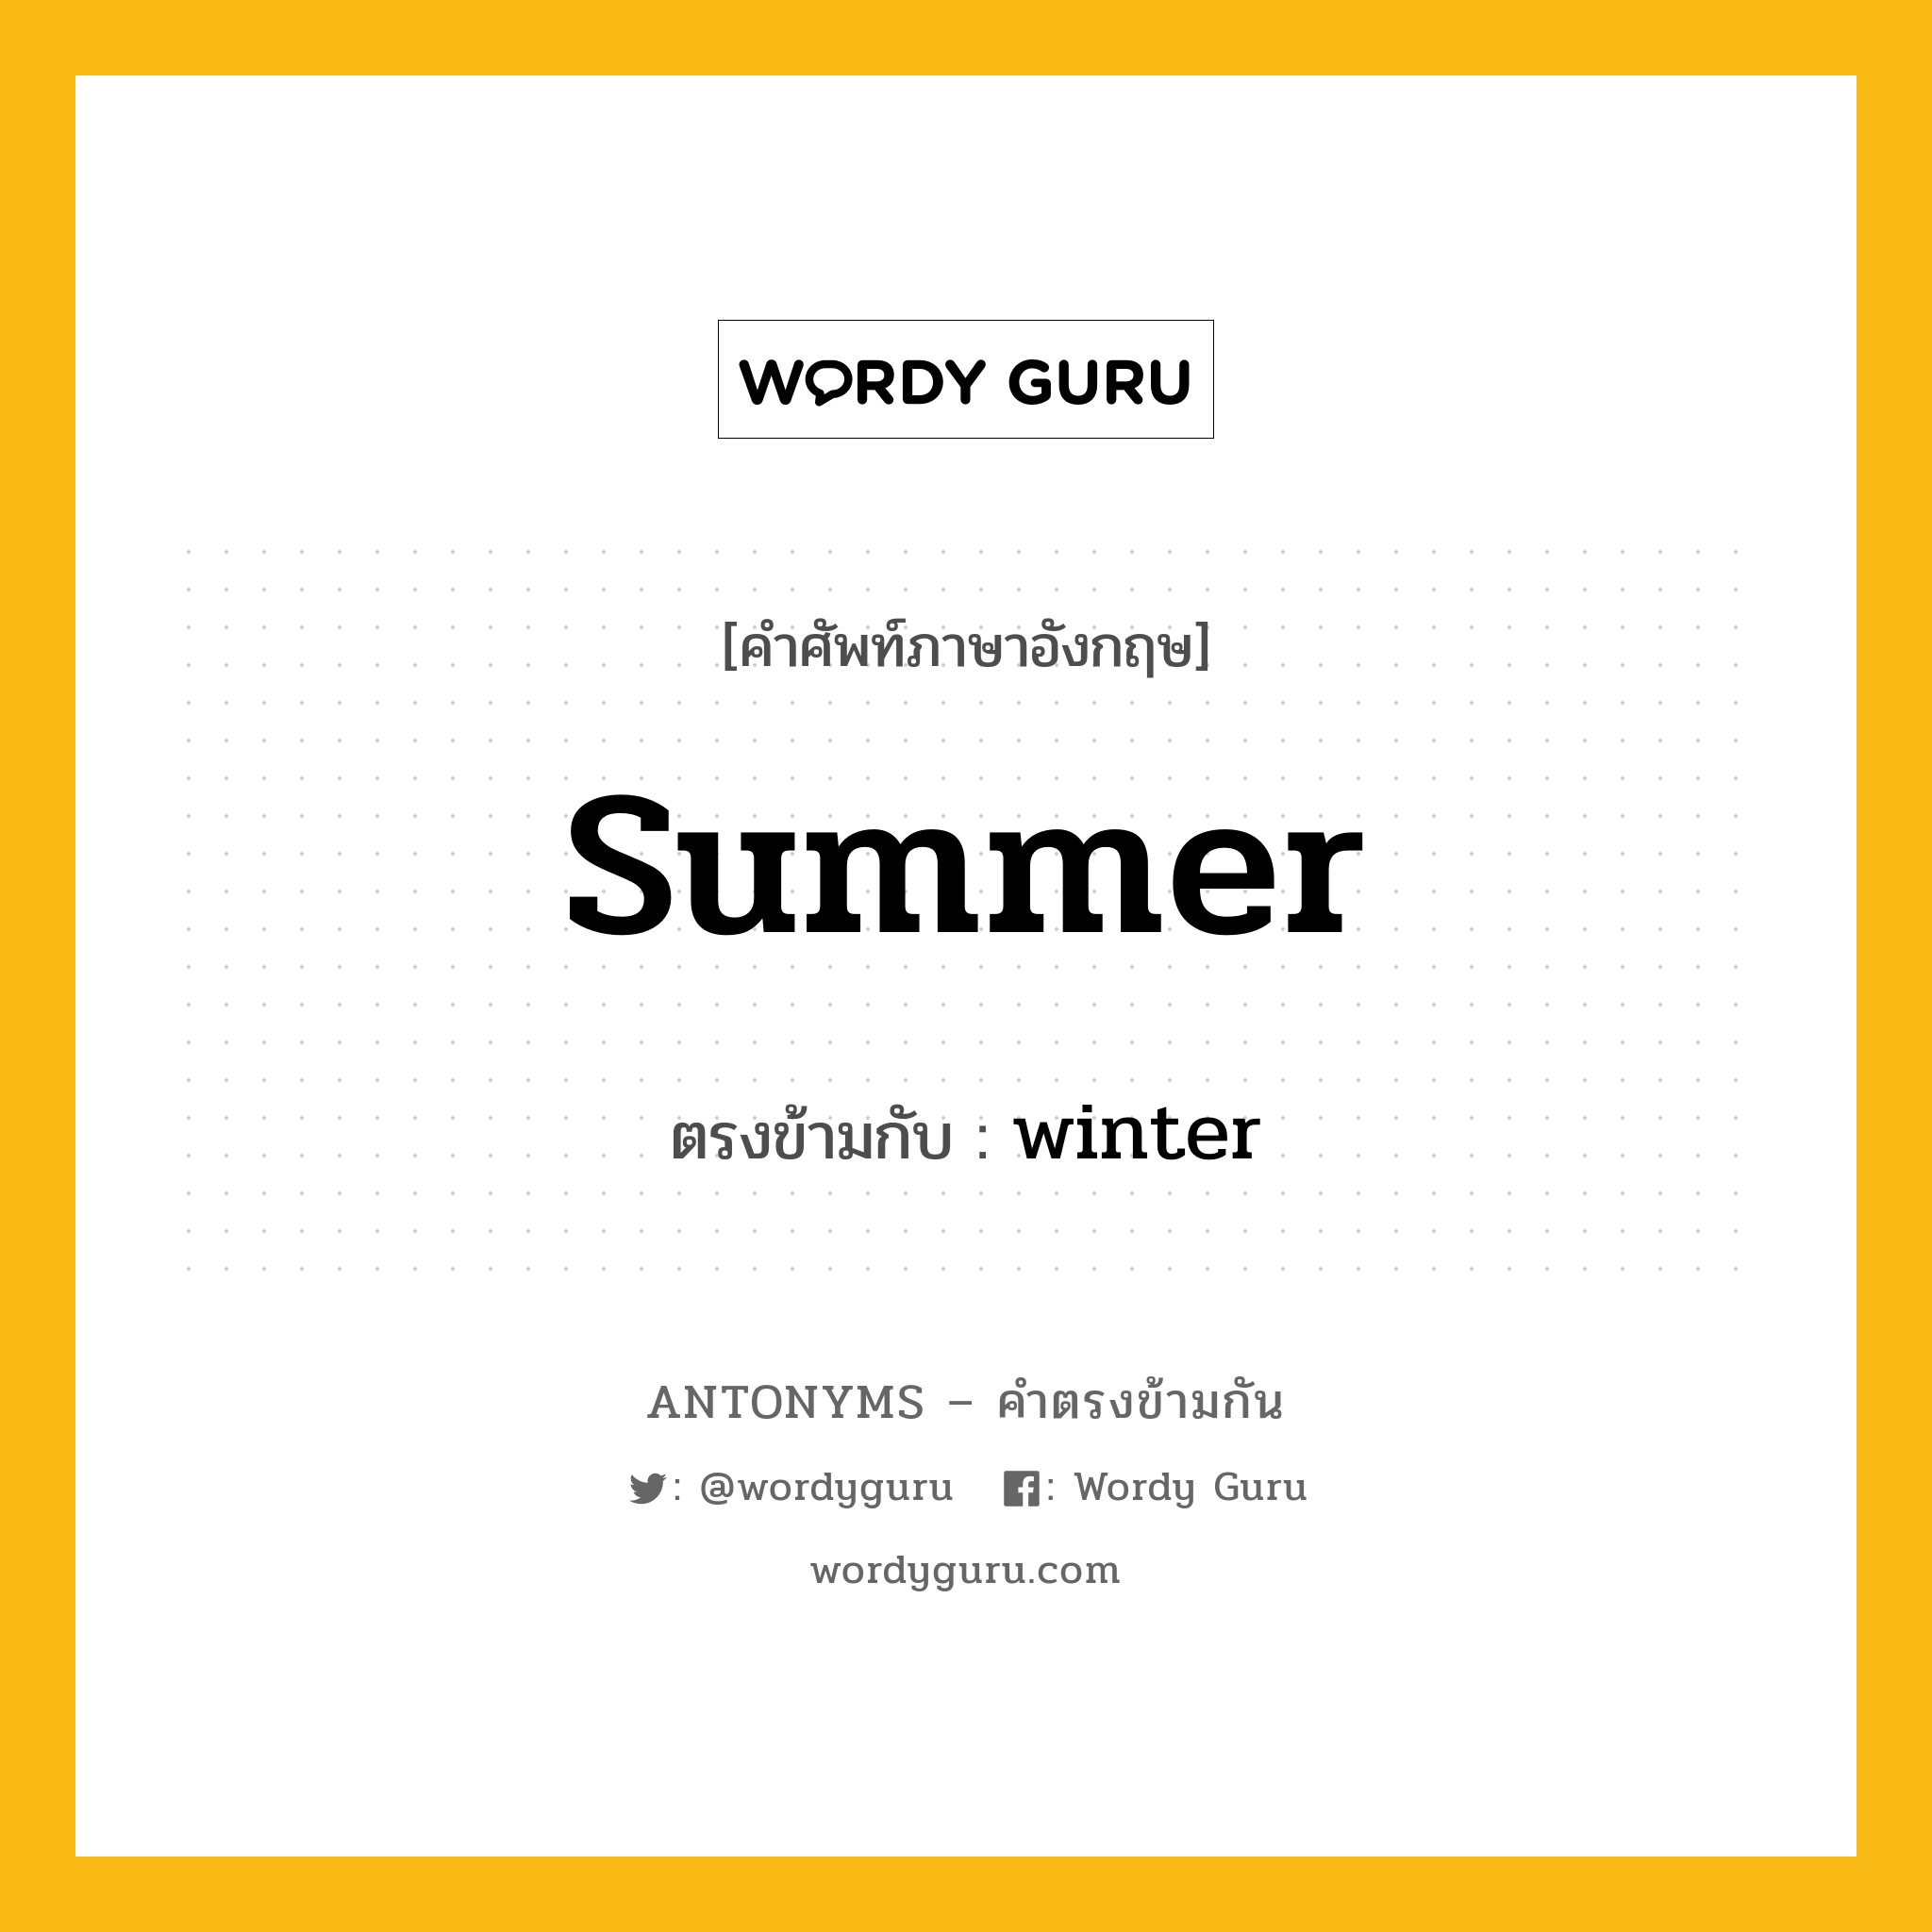 summer เป็นคำตรงข้ามกับคำไหนบ้าง?, คำศัพท์ภาษาอังกฤษ summer ตรงข้ามกับ winter หมวด winter